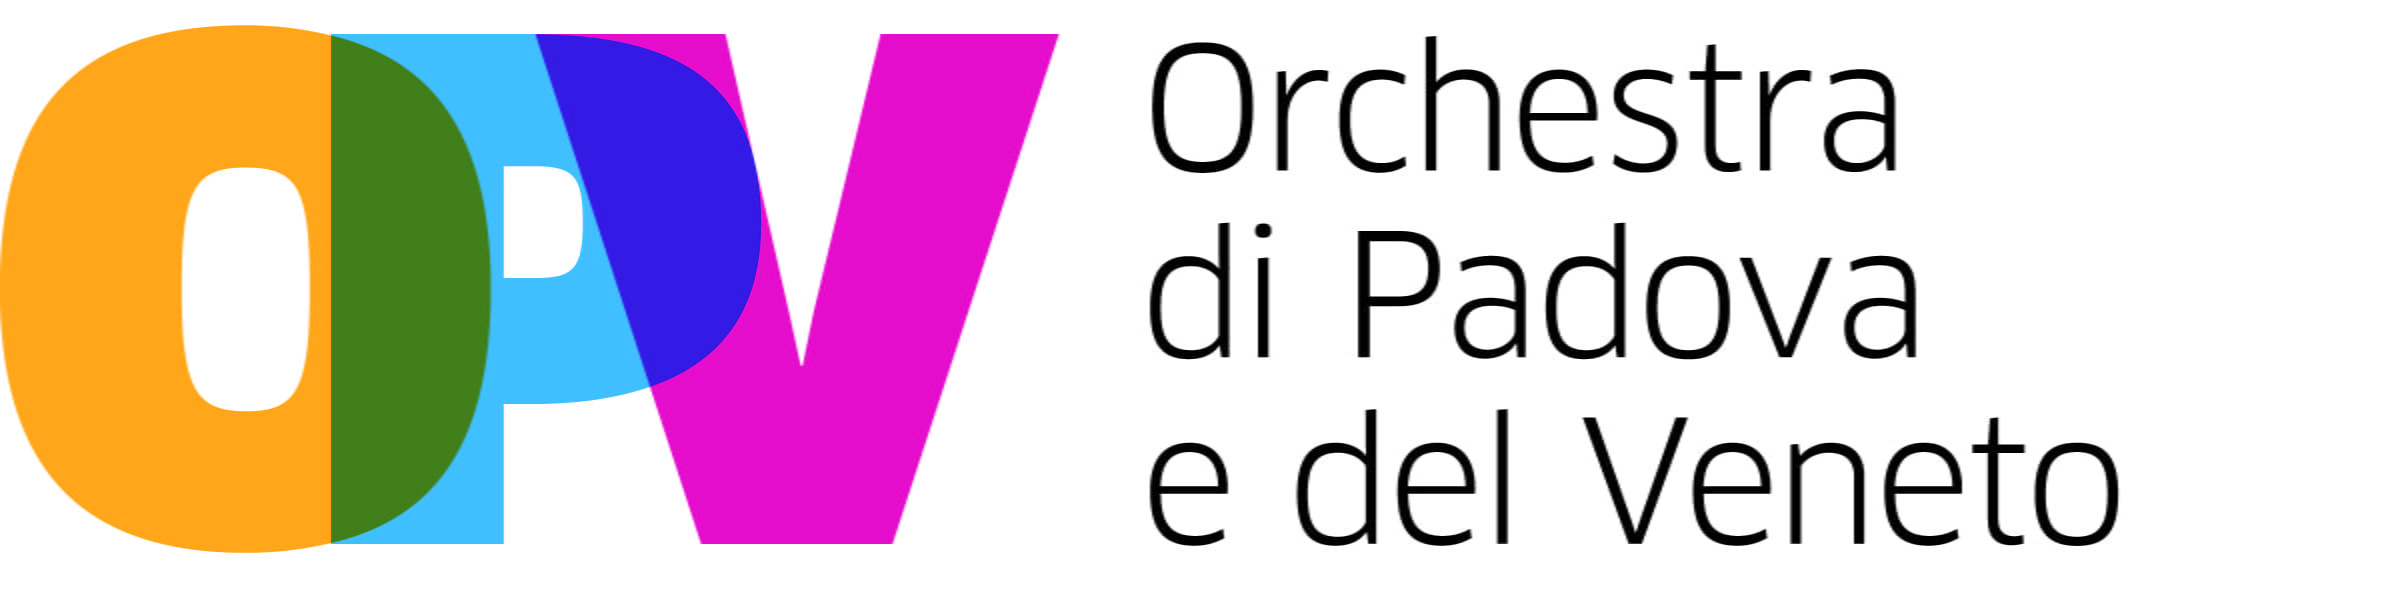 OPV Orchestra di Padova e del Veneto